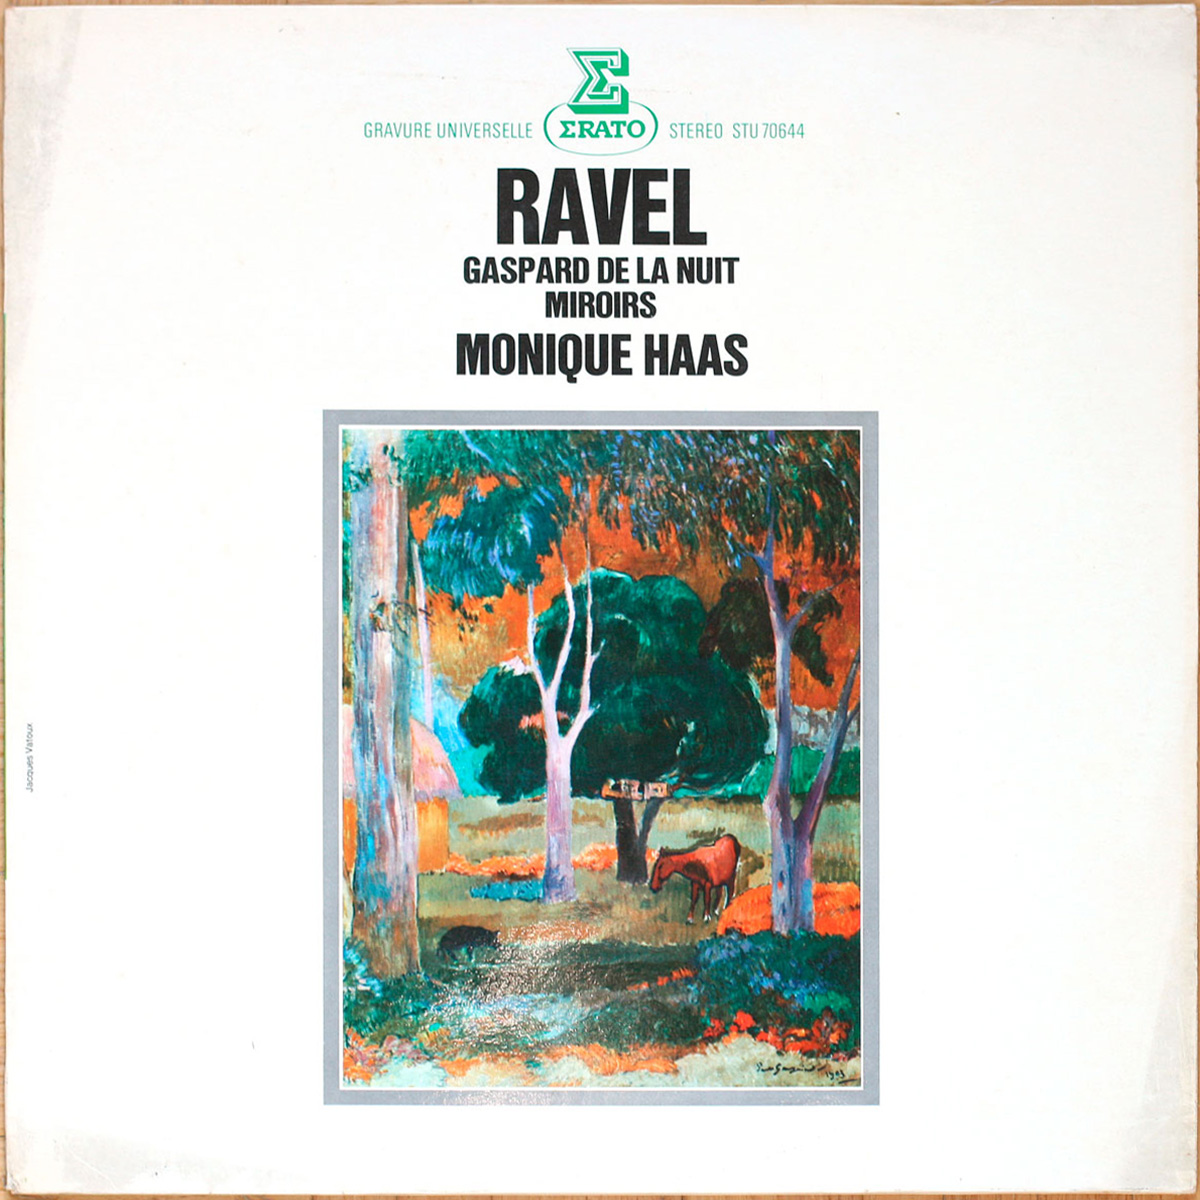 Ravel • Miroirs (5 pièces pour piano) – Gaspard de la nuit • Erato STU 70644 • Monique Haas